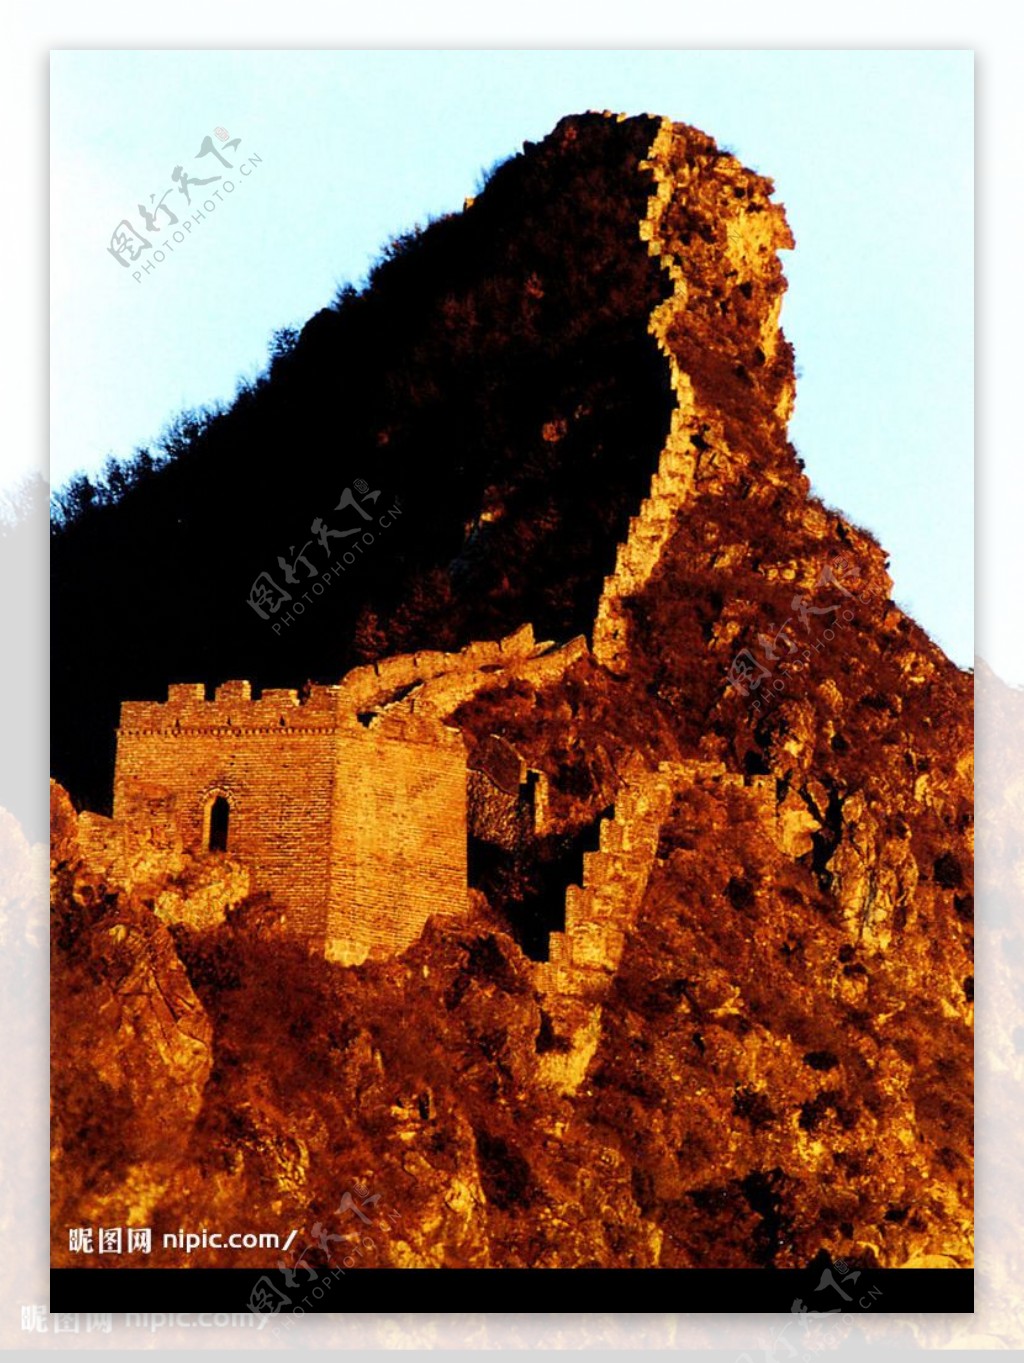 修建在险峻的山脊上的城墙图片